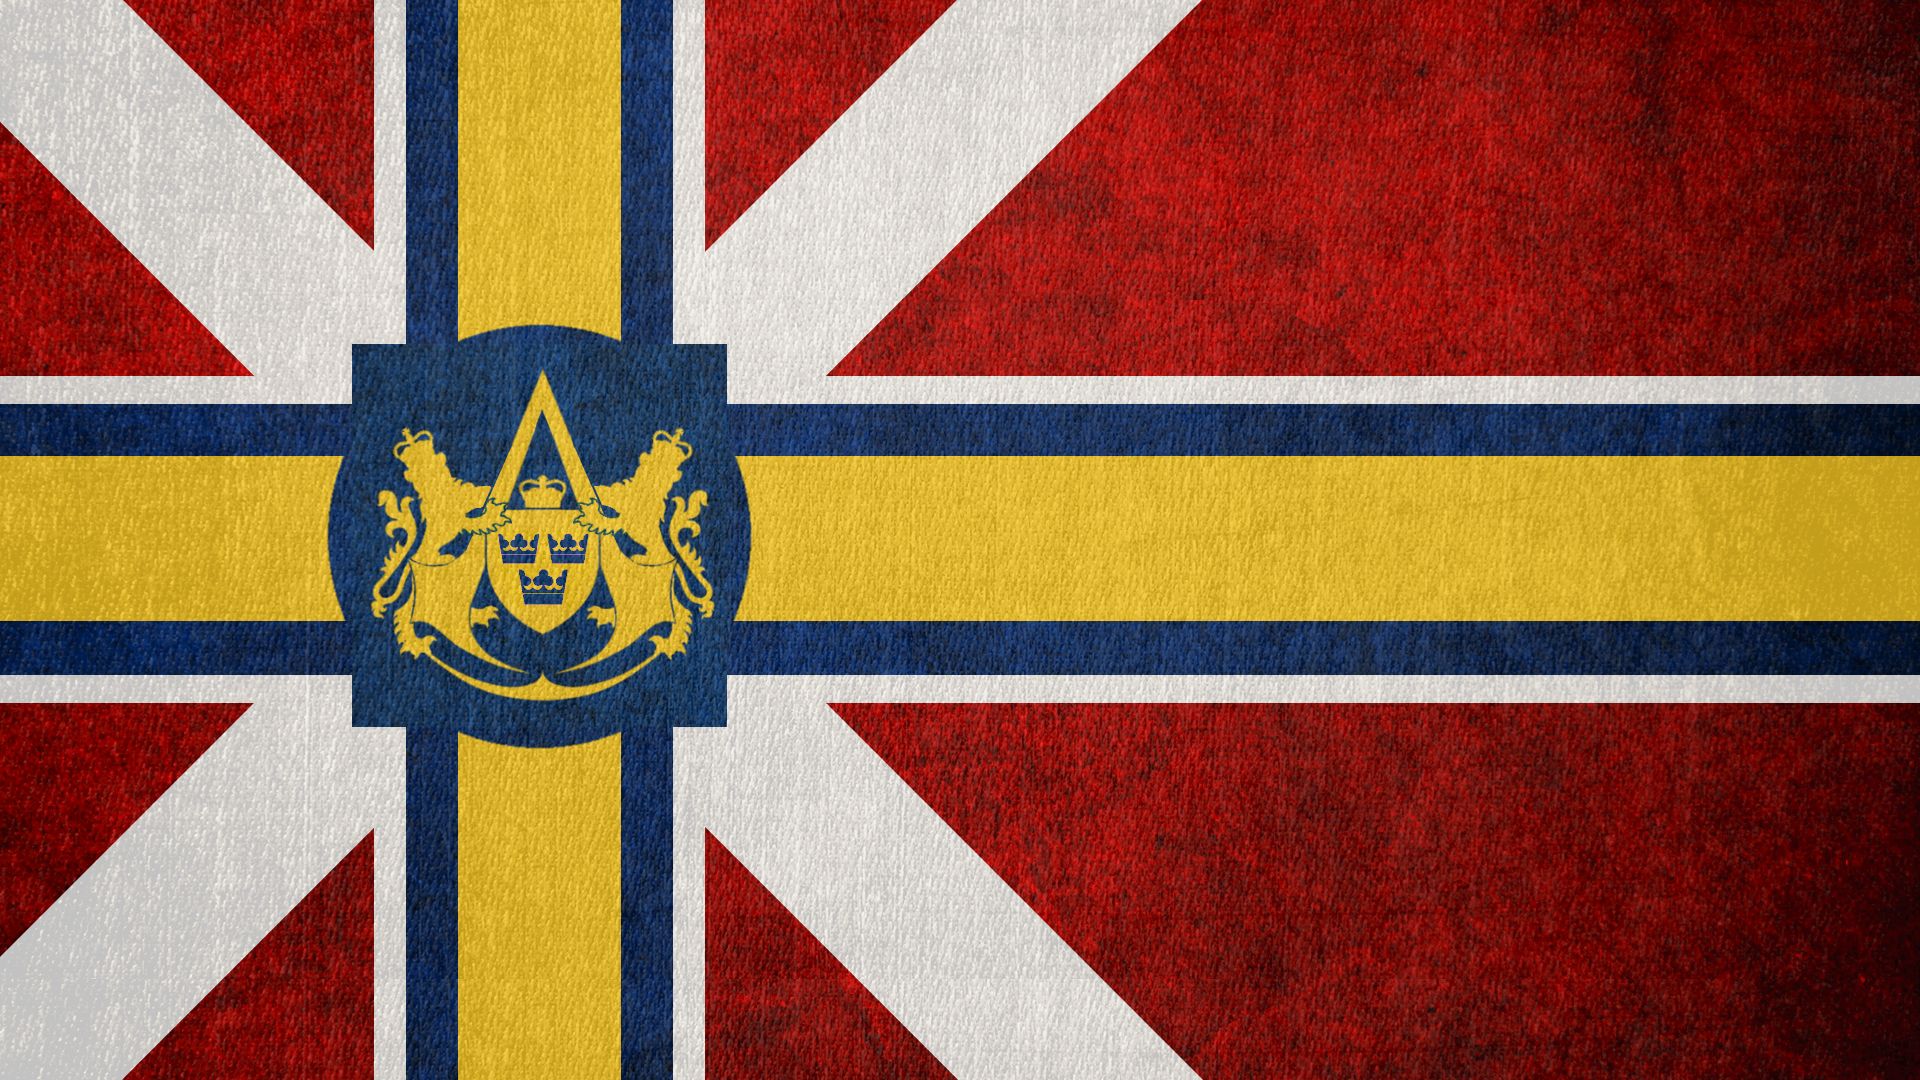 Скачать обои Флаг Скандинавского Содружества на телефон бесплатно